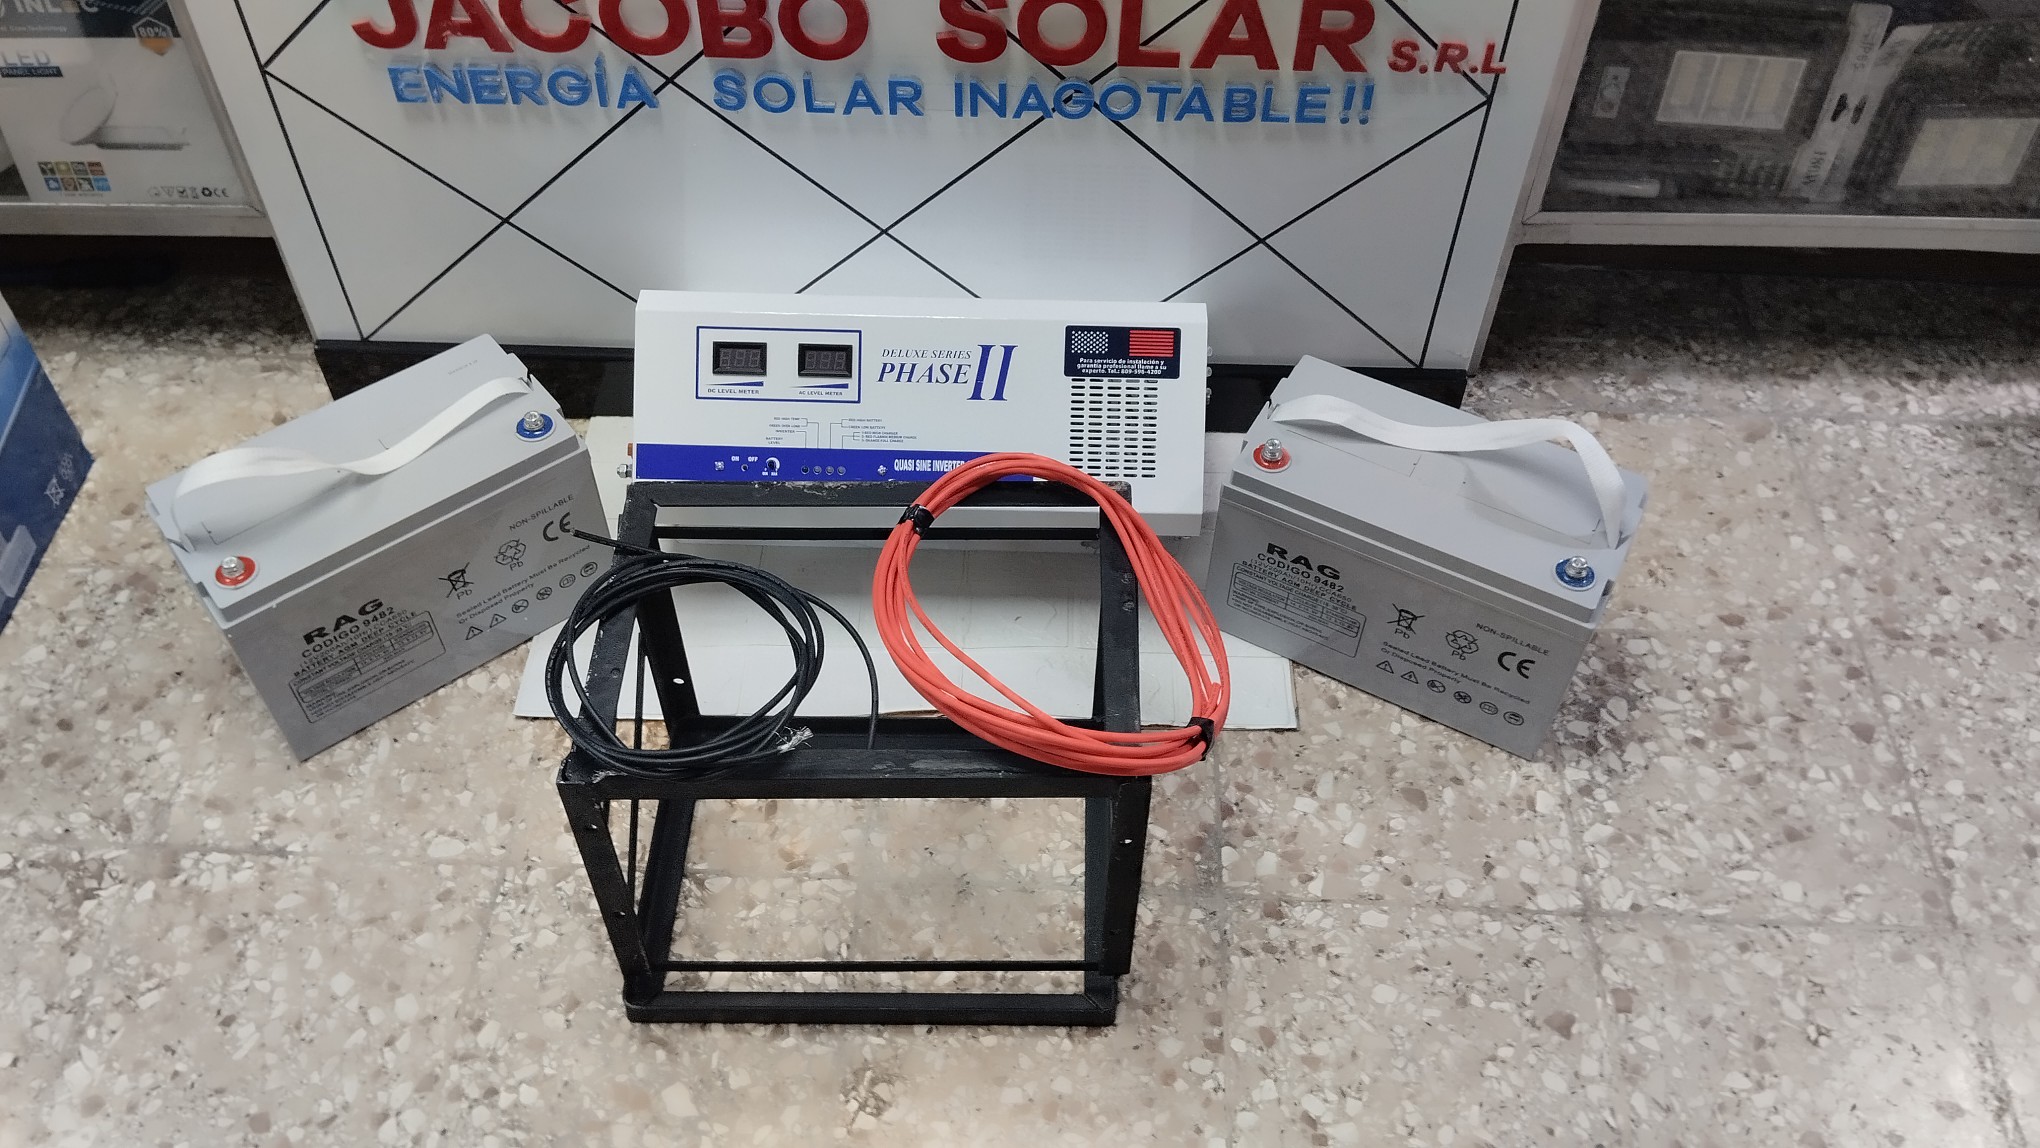 otros electronicos - Jacobo solar está madres con oferta de inversor con sus baterías y sus accesorio 0